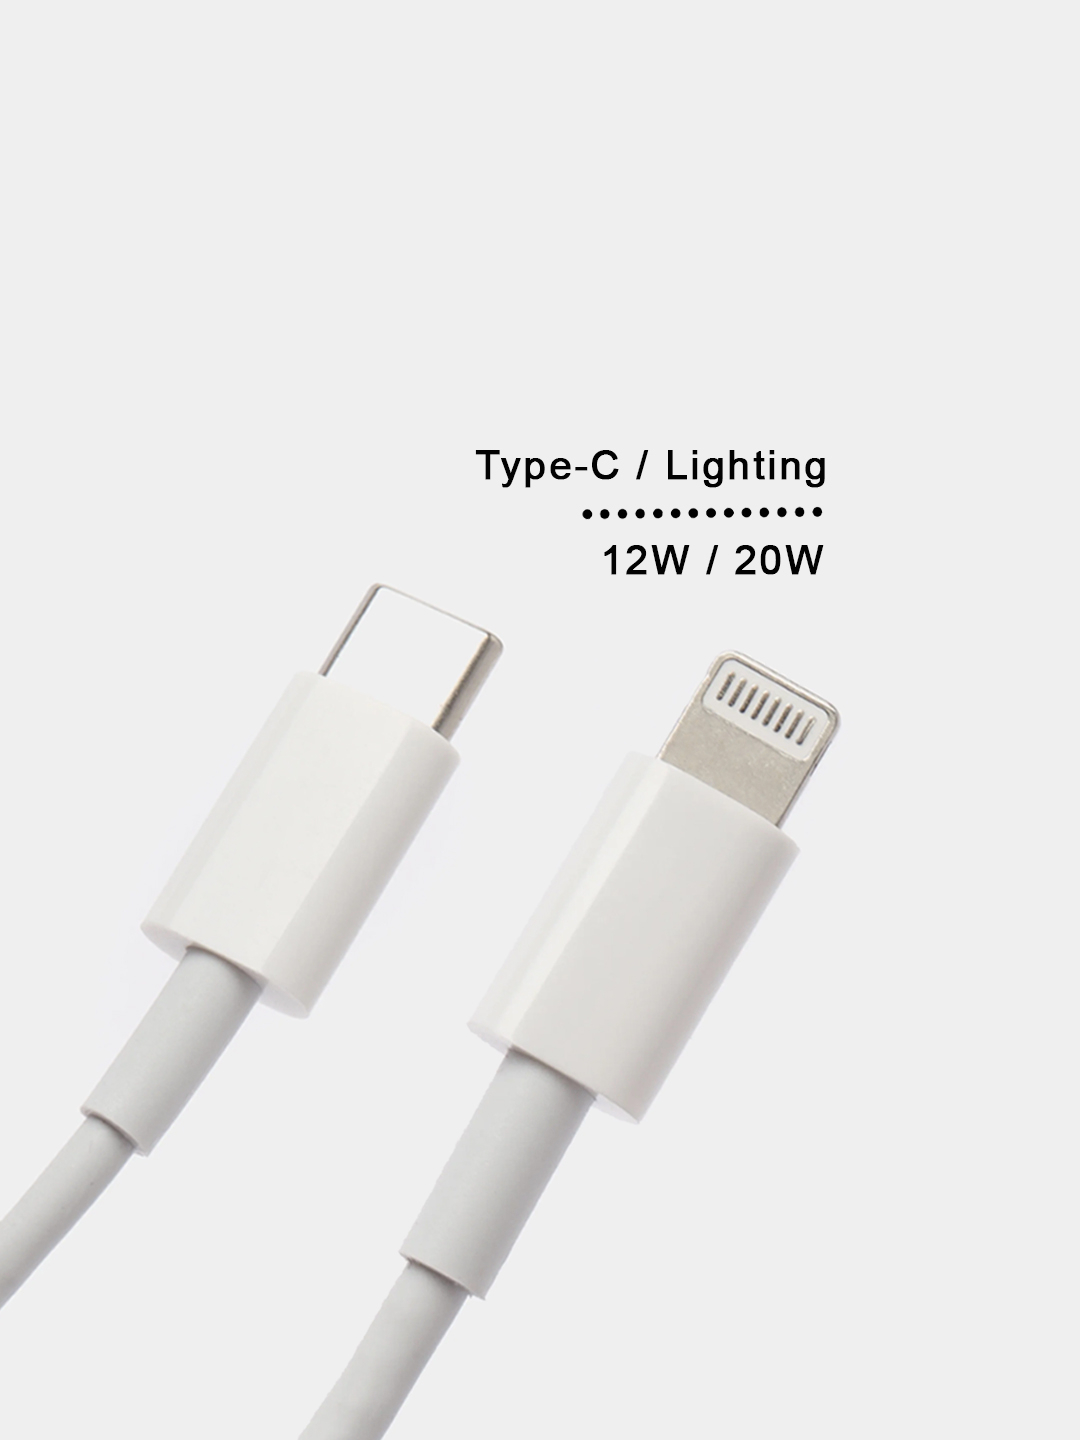 Быстрая зарядка для айфона (Type C-Lightning), шрур для iPhone iPad .